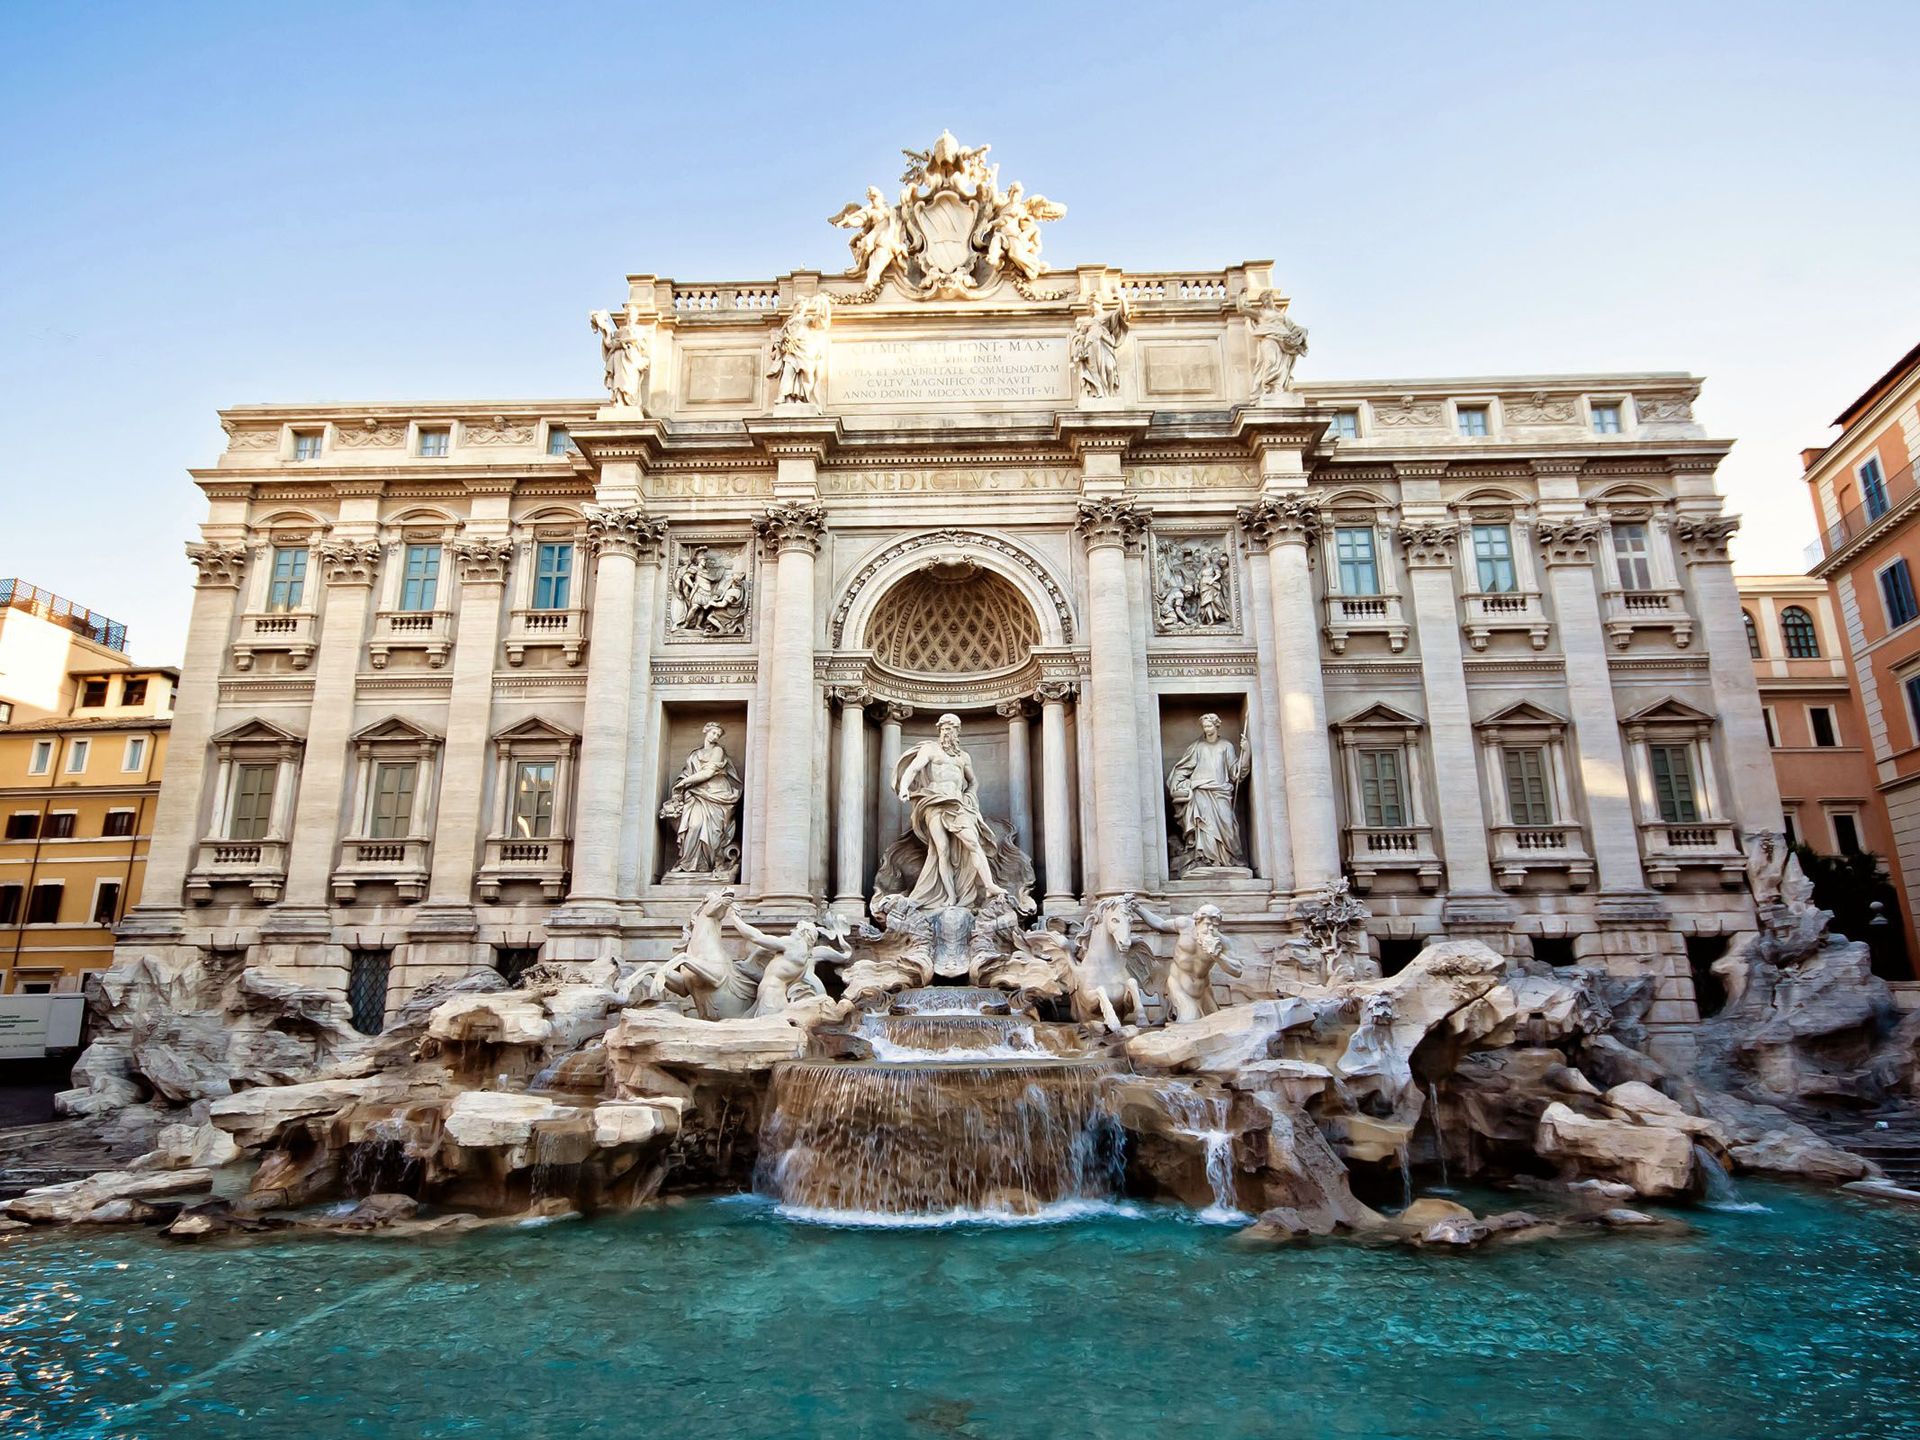 Fontana-di-Trevi-Baroque-Architecture-Rome-Italy